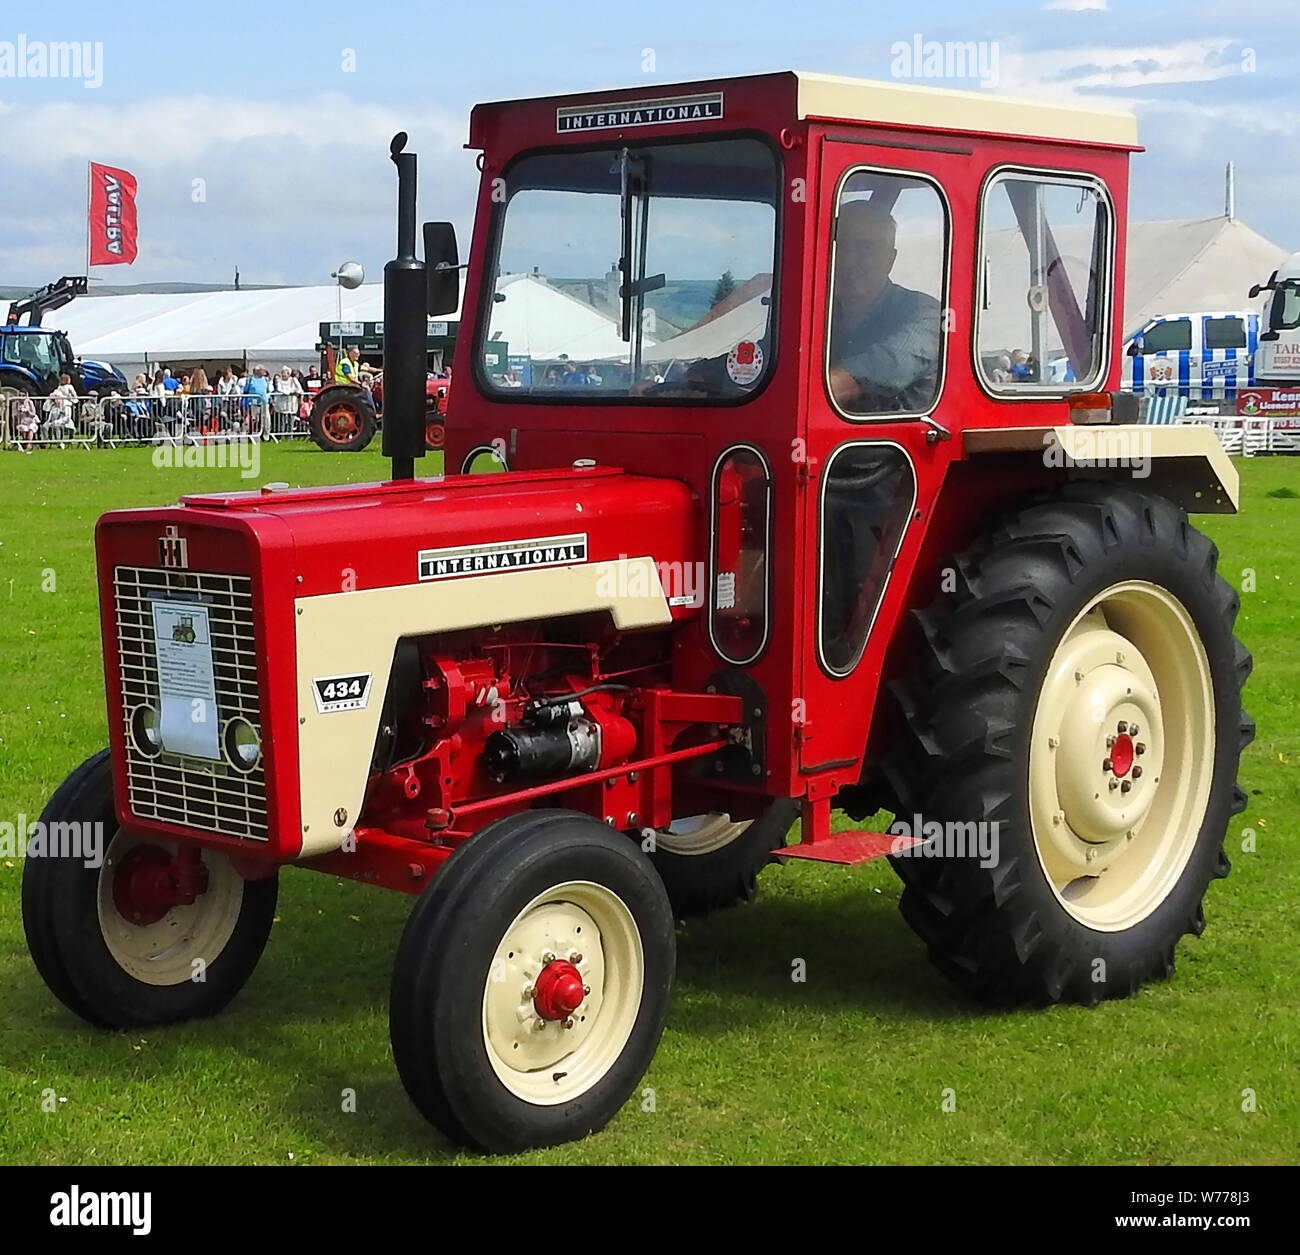 Vintaghe International Traktor bei Stranraer, Schottland, jährliche zeigen, Juli 2019 Stockfoto